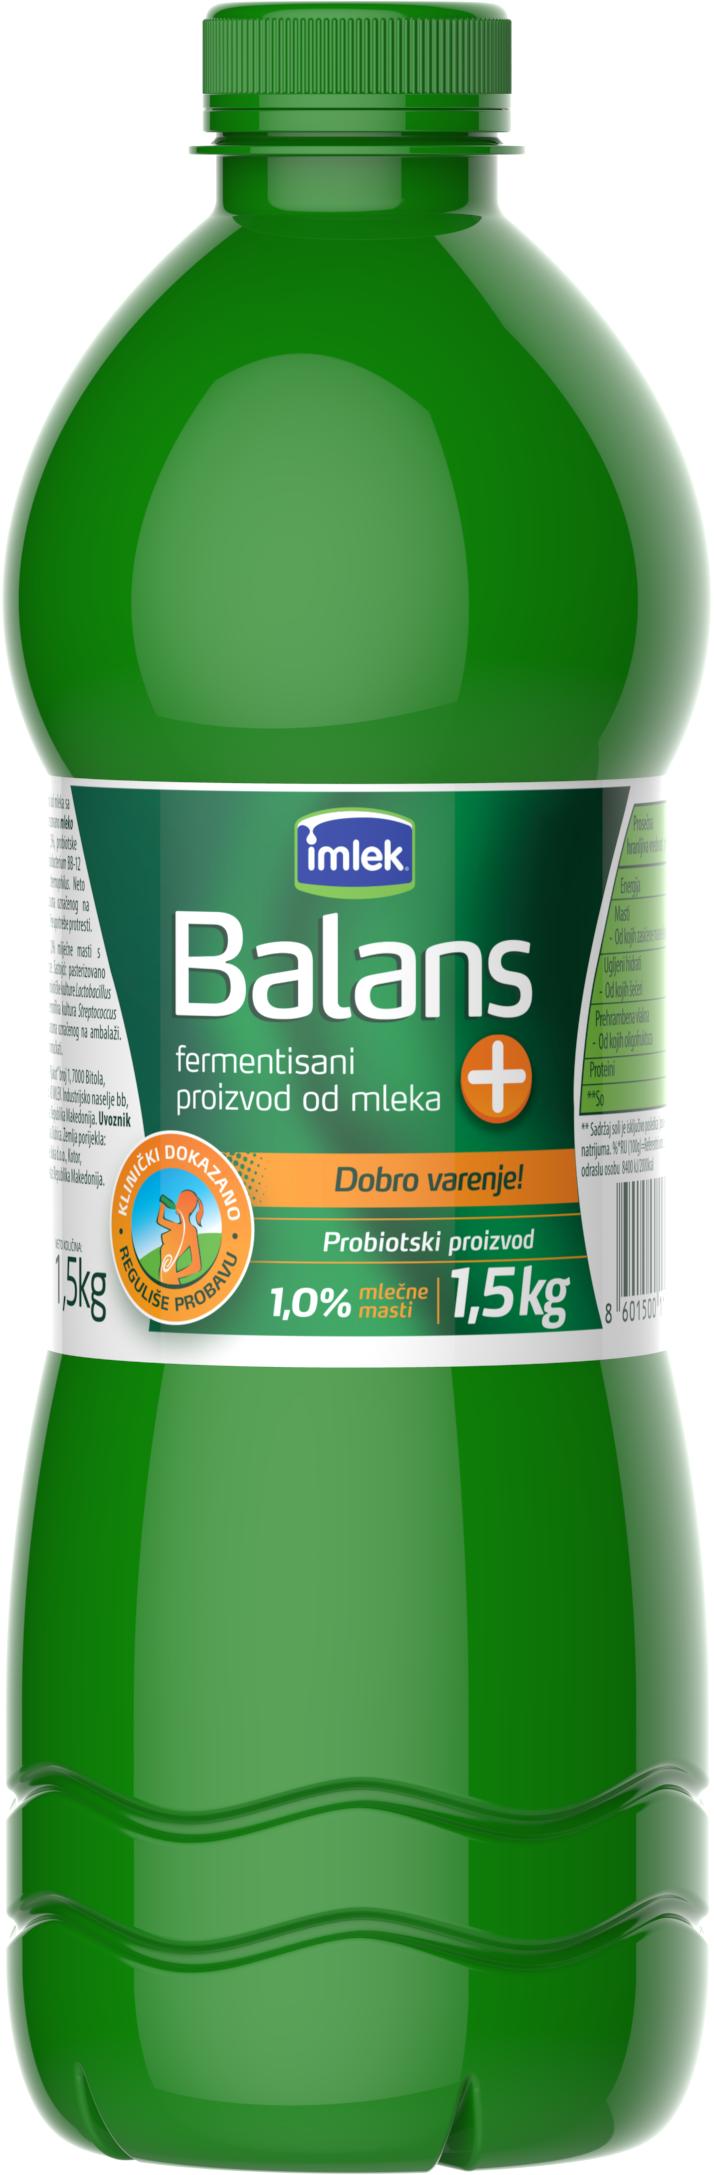 Slika za Jogurt Balans+ 1%mm 1.5kg